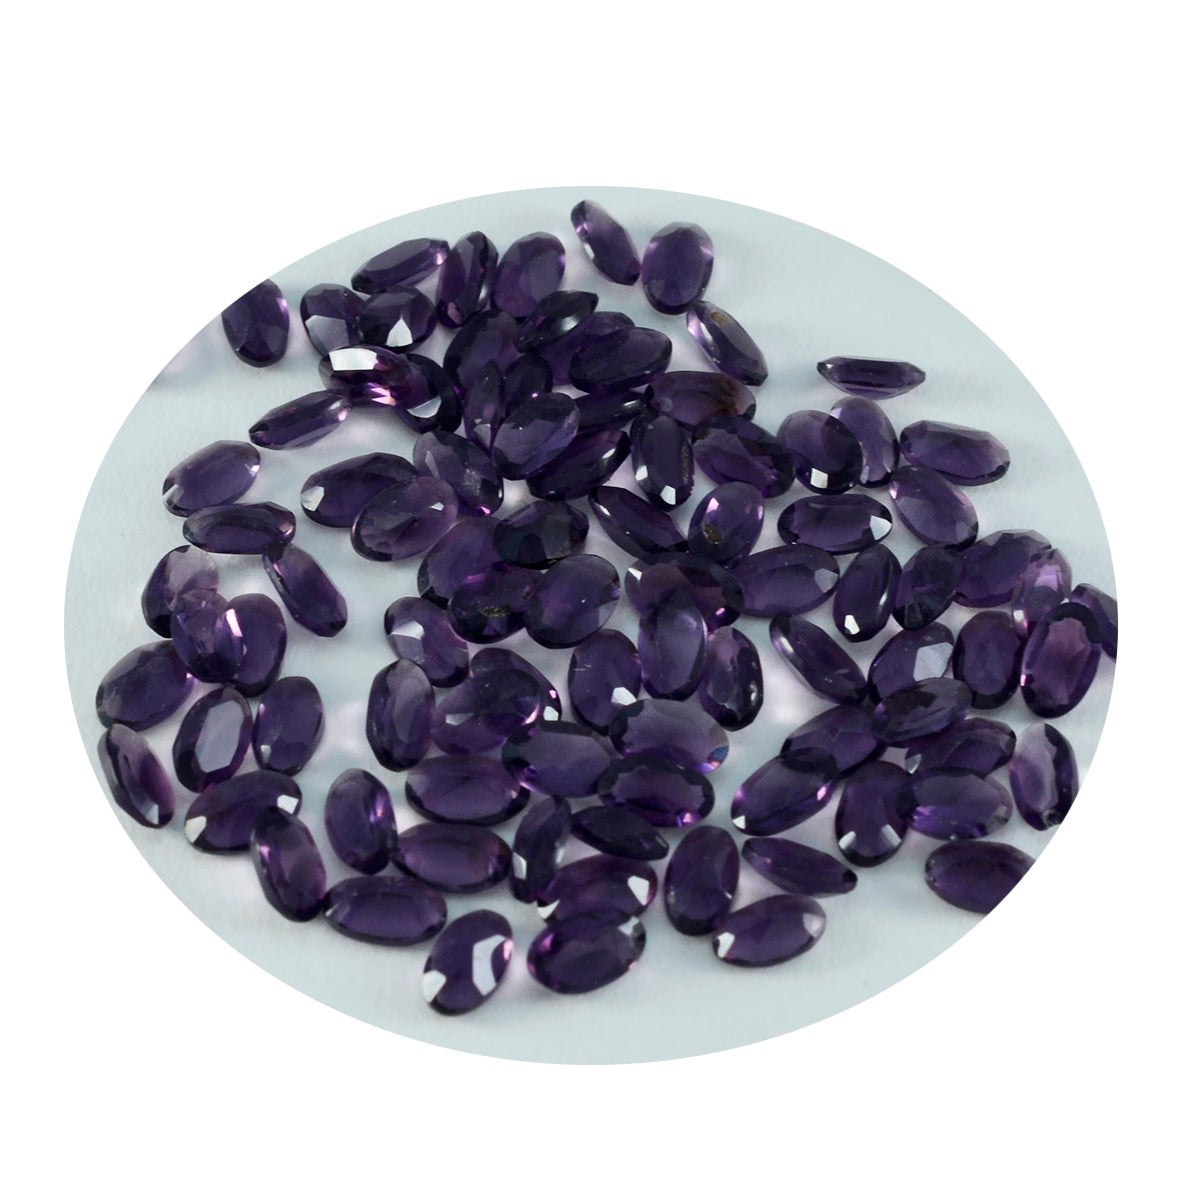 riyogems 1 шт. фиолетовый аметист cz граненый 3x5 мм овальной формы прекрасный качественный свободный камень